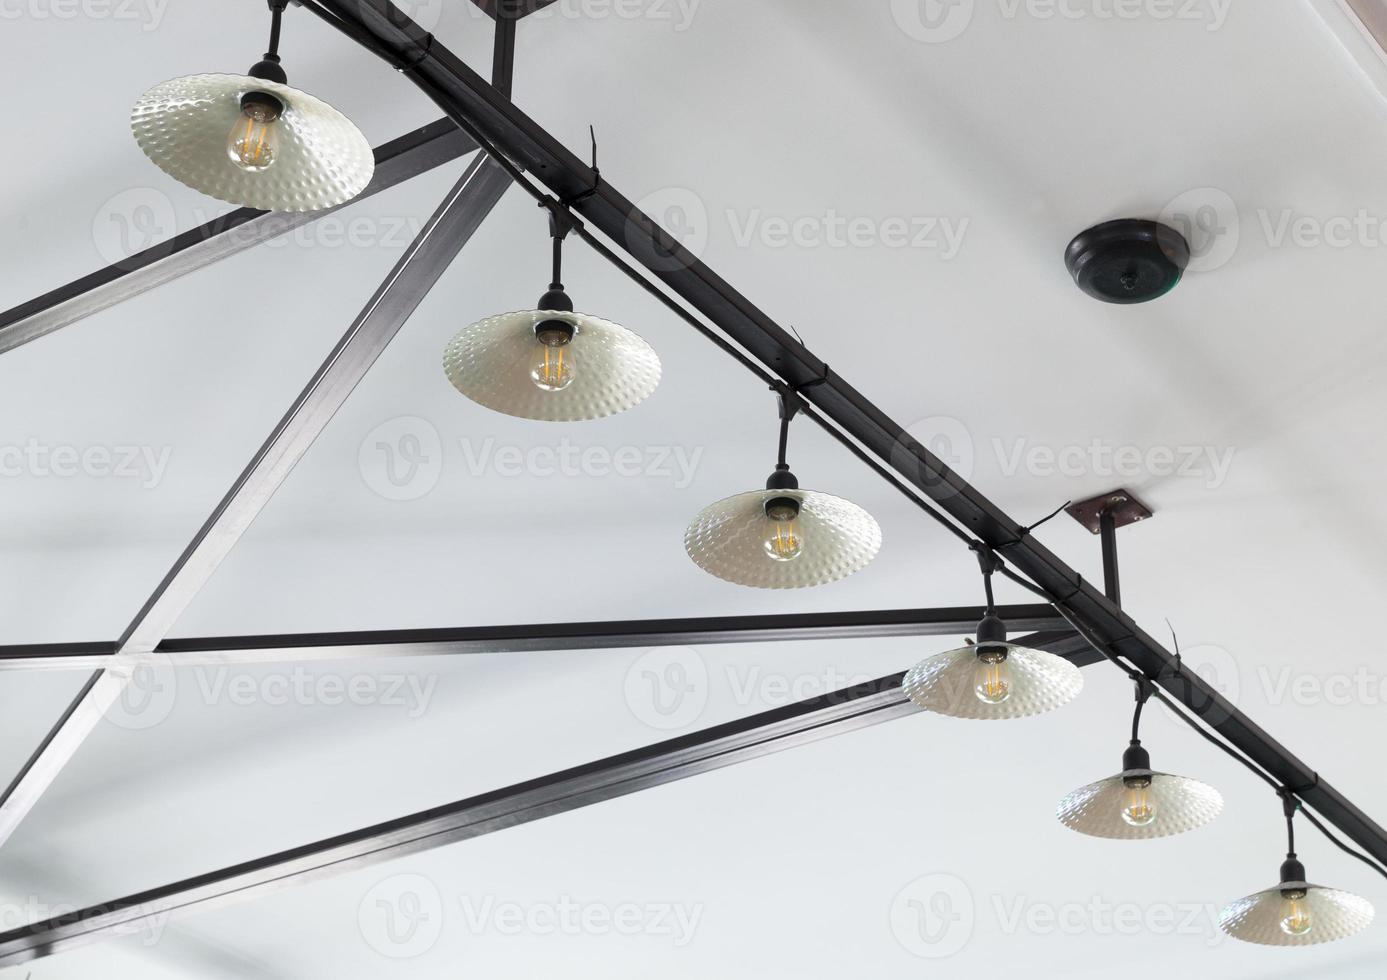 sistema de iluminación con lámparas en la cafetería 9448512 Foto de stock  en Vecteezy